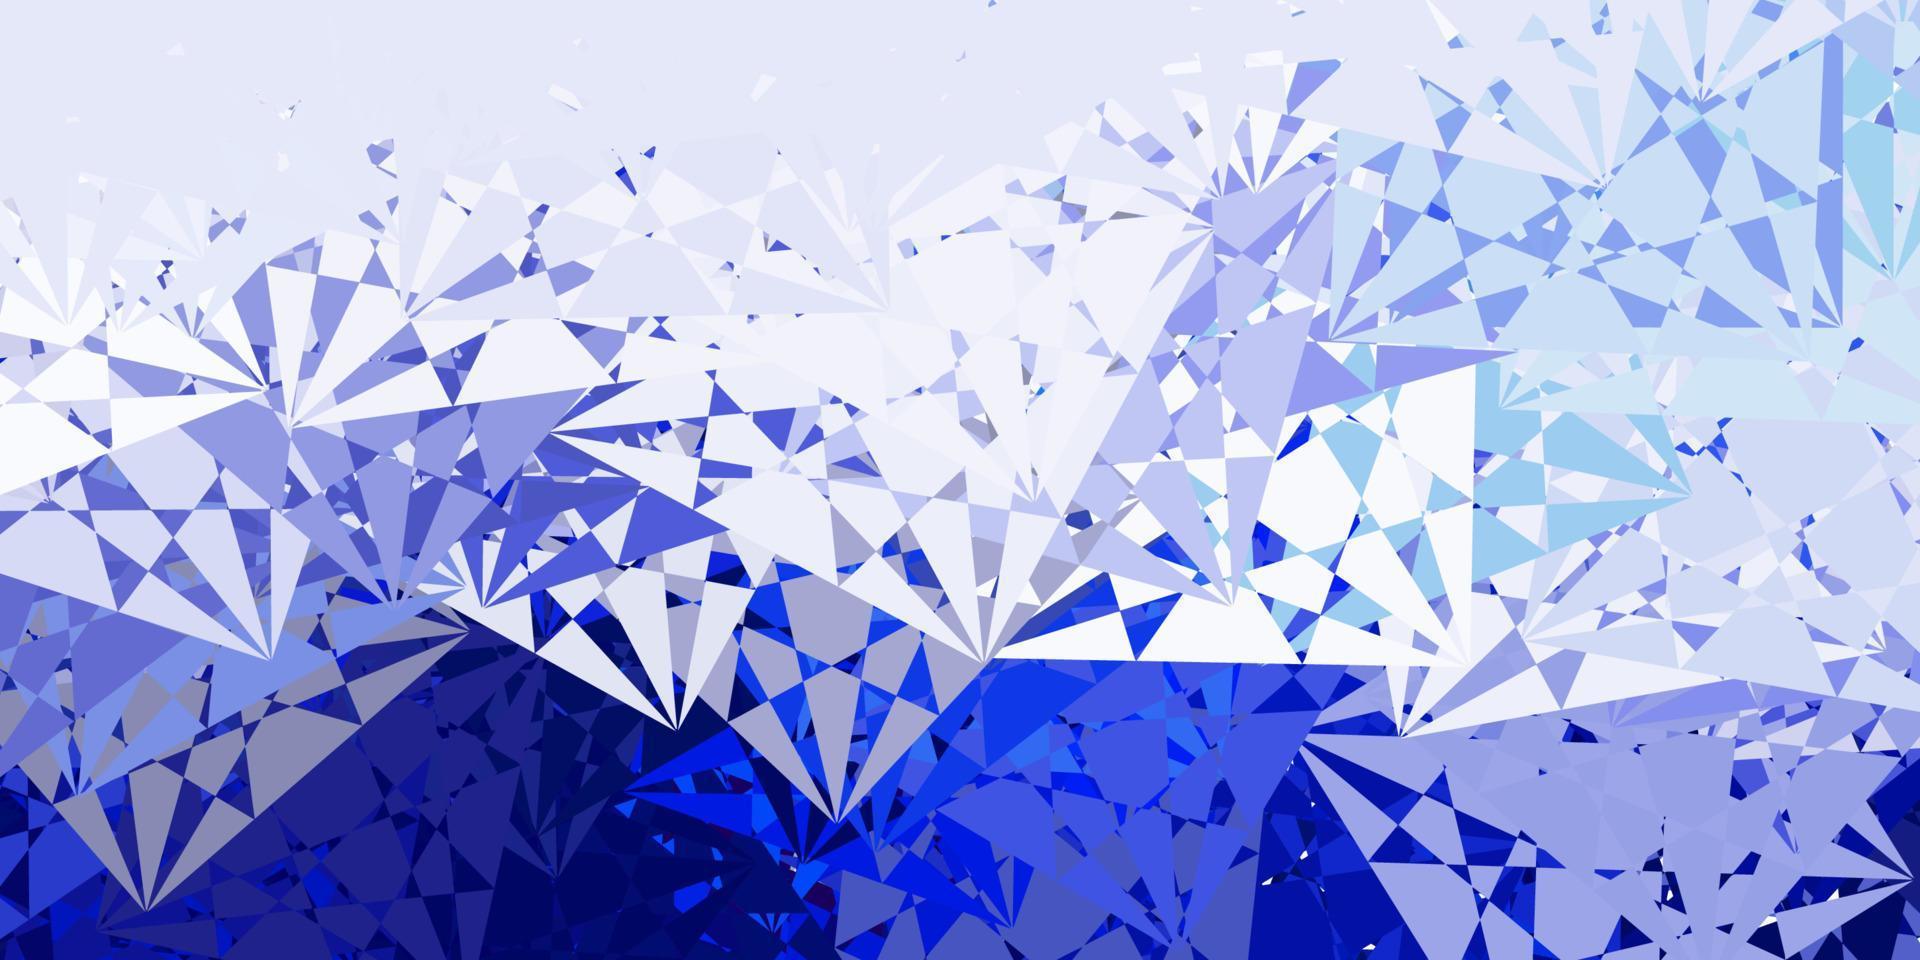 diseño de vector azul claro con formas triangulares.